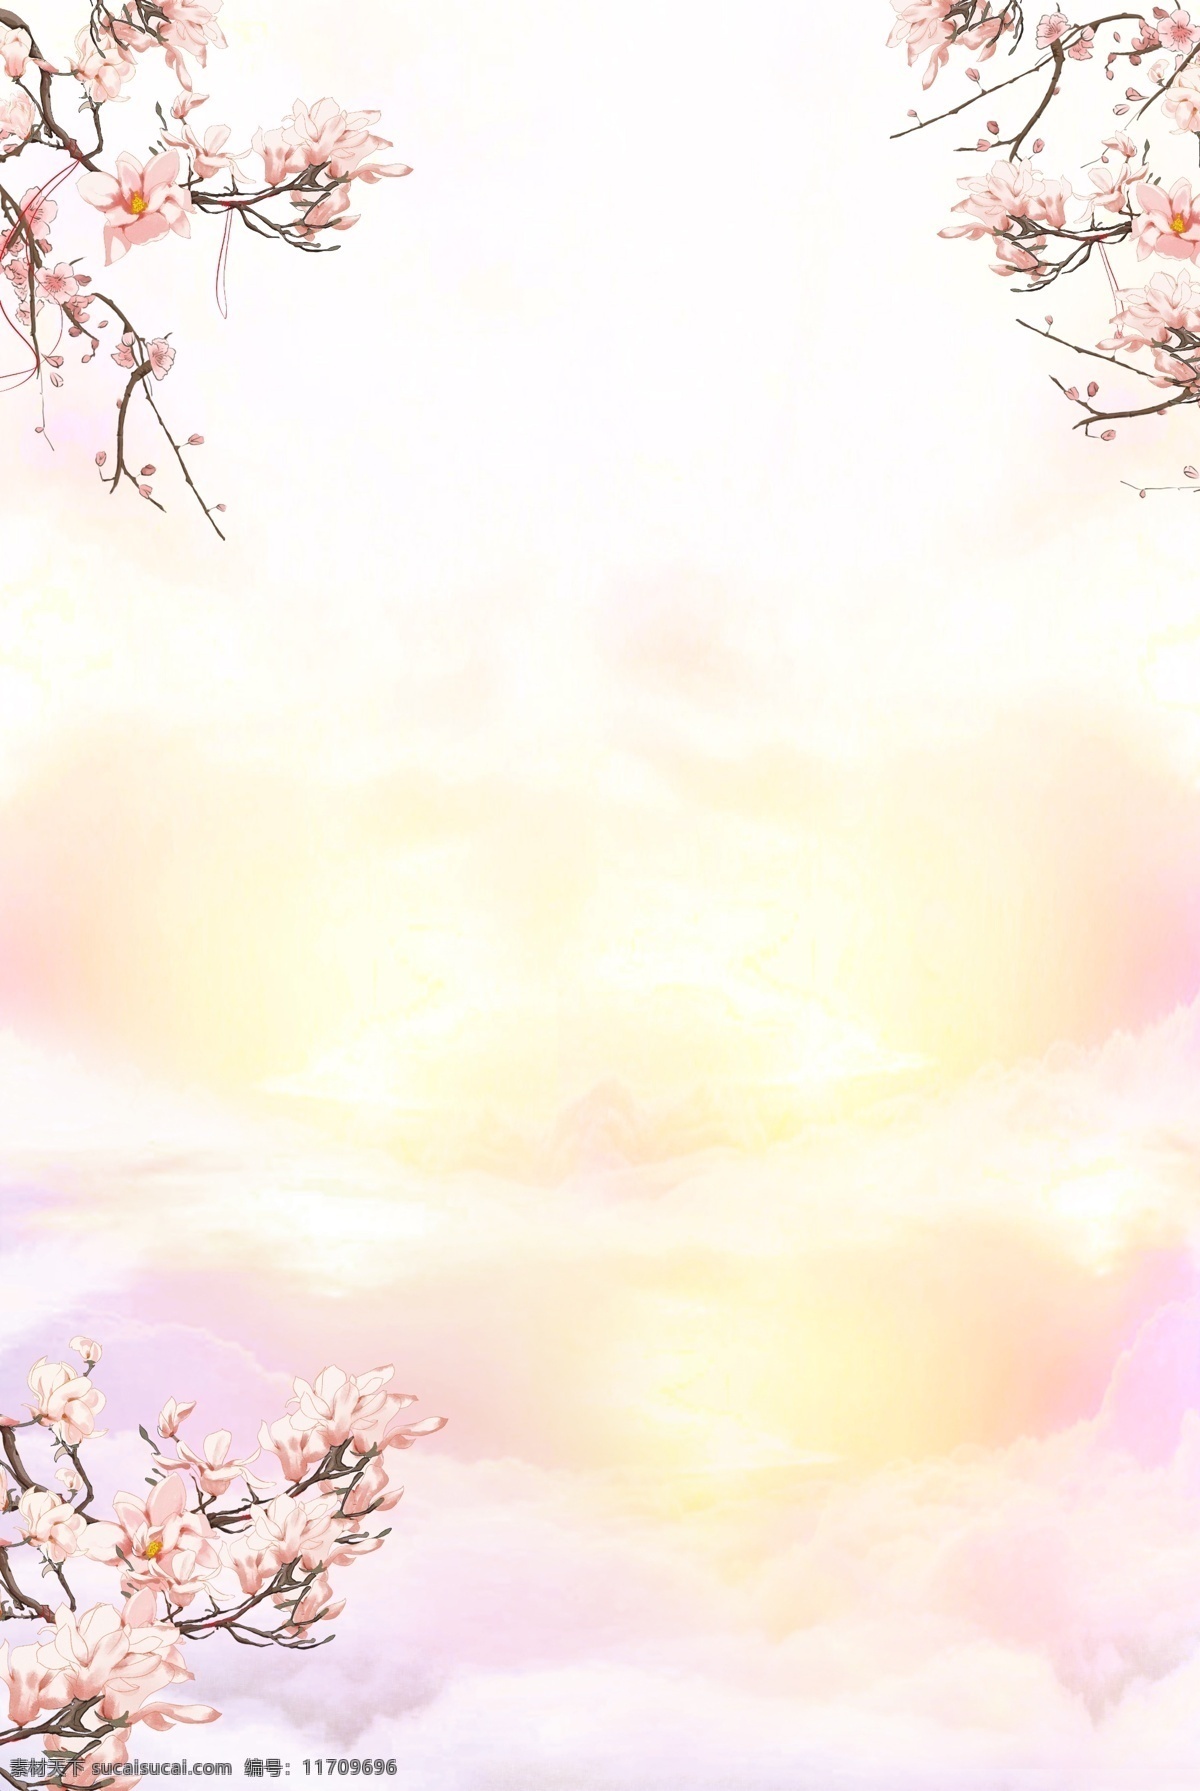 唯美 桃花 花朵 背景 意境 简约 天空 云彩 合成 植物 边框背景 浪漫 爱情